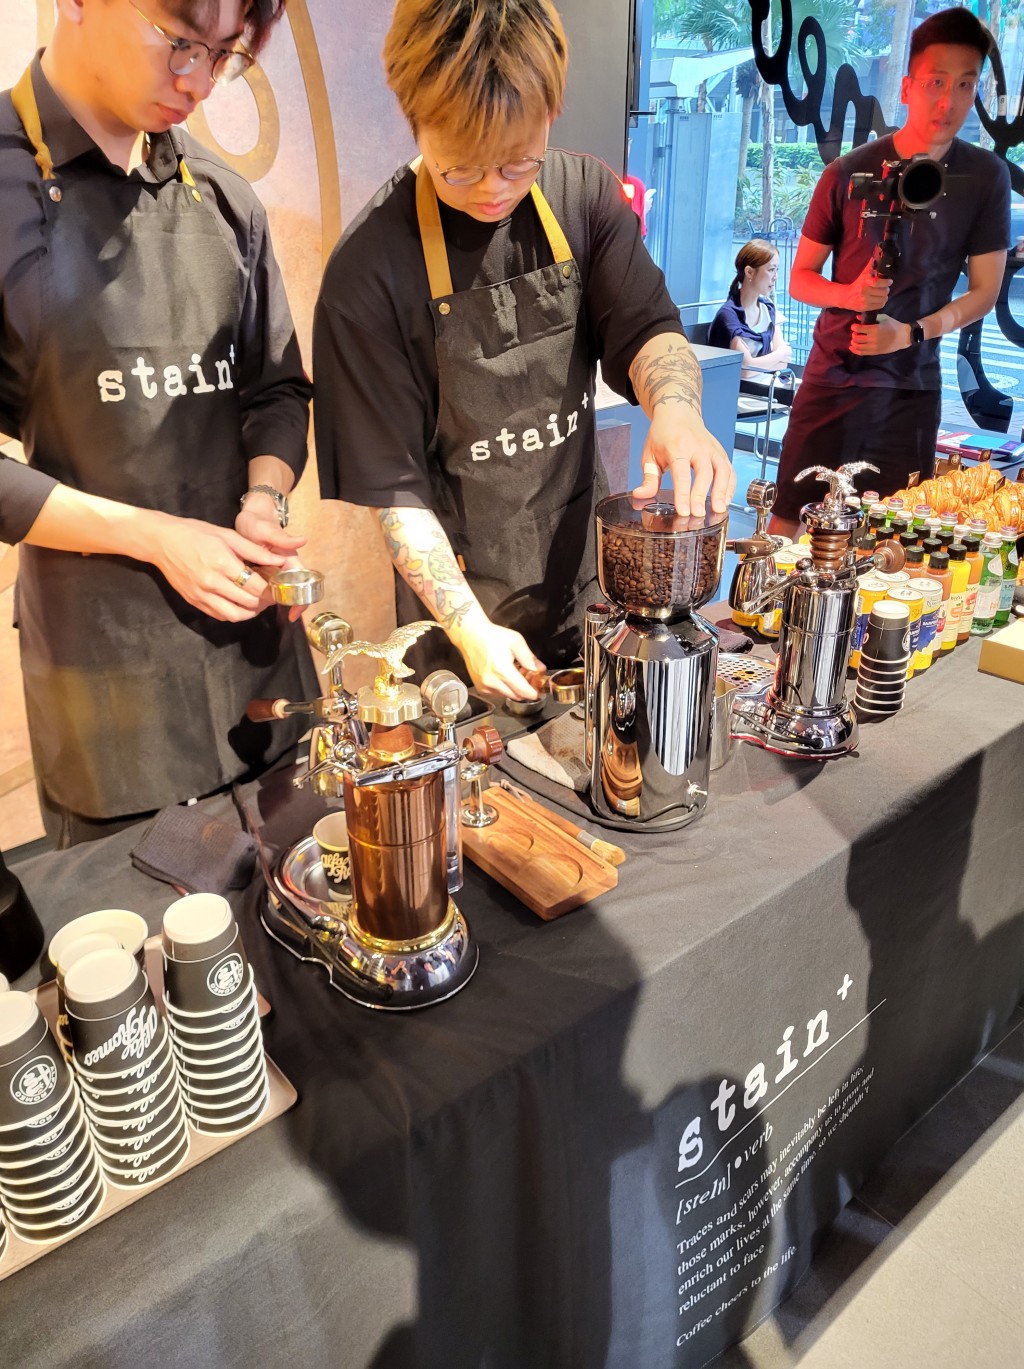 全新Tonale发布会现场提供意大利手工冲压咖啡供客人享用。